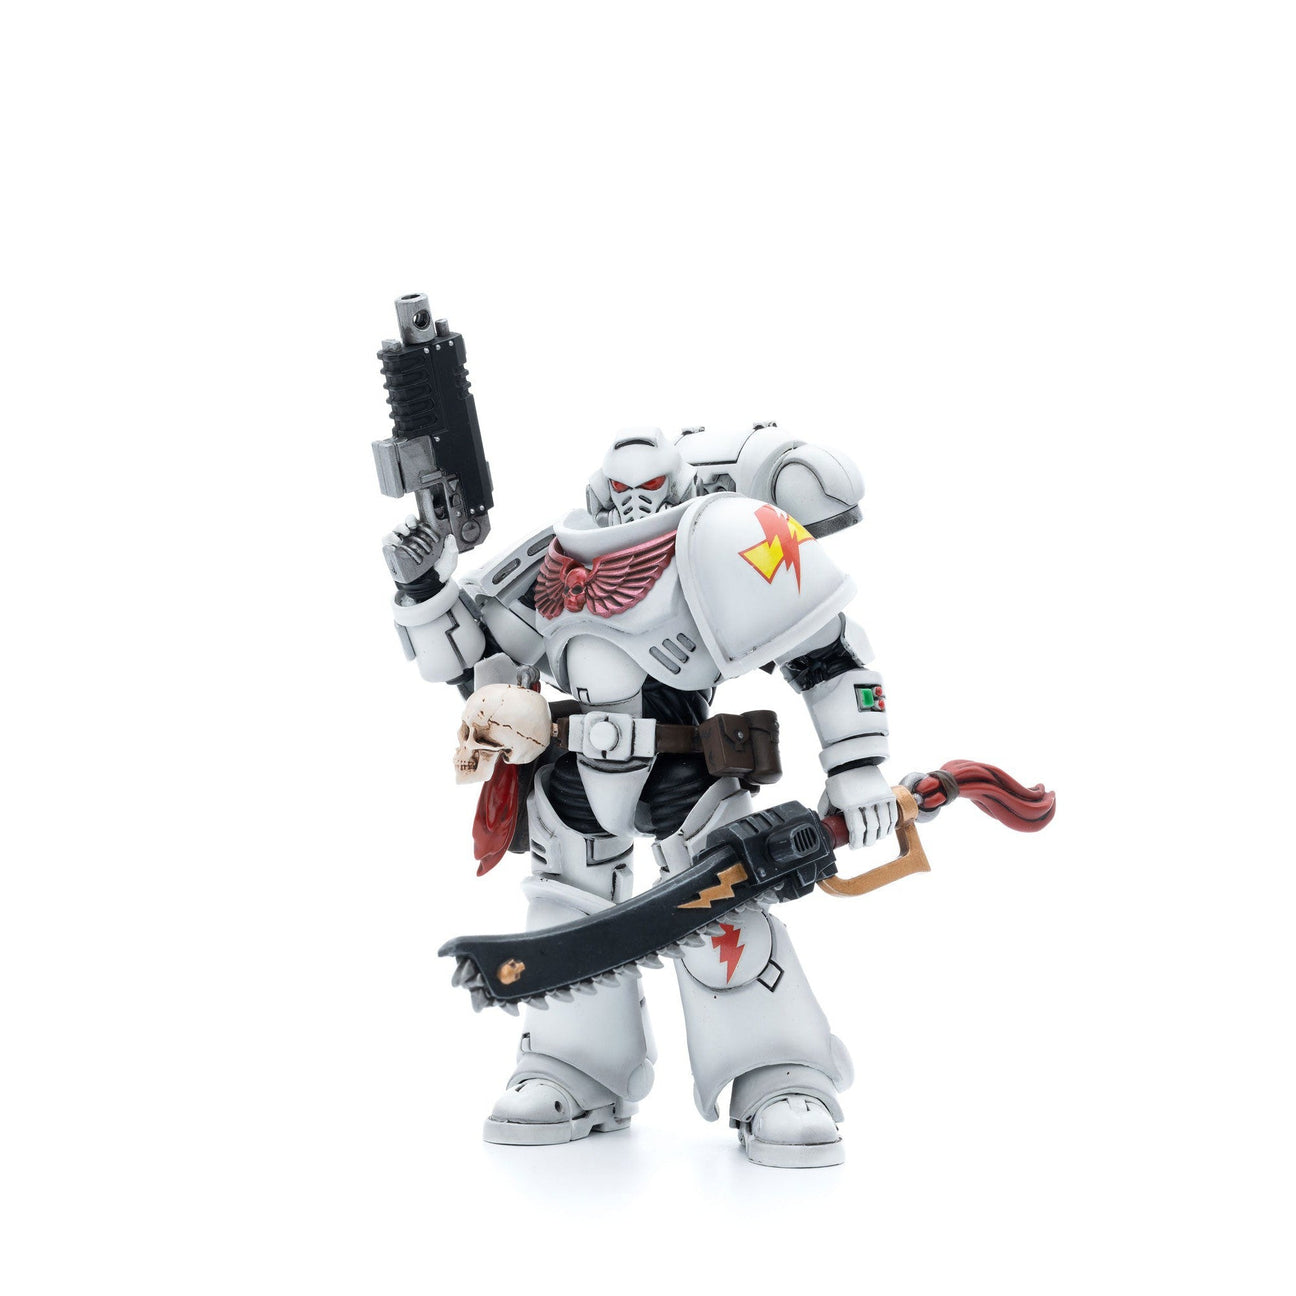 Warhammer 40k: White Scars Assault Intercessor Brother Batjargal - 12 cm-Actionfiguren-JoyToy-Mighty Underground